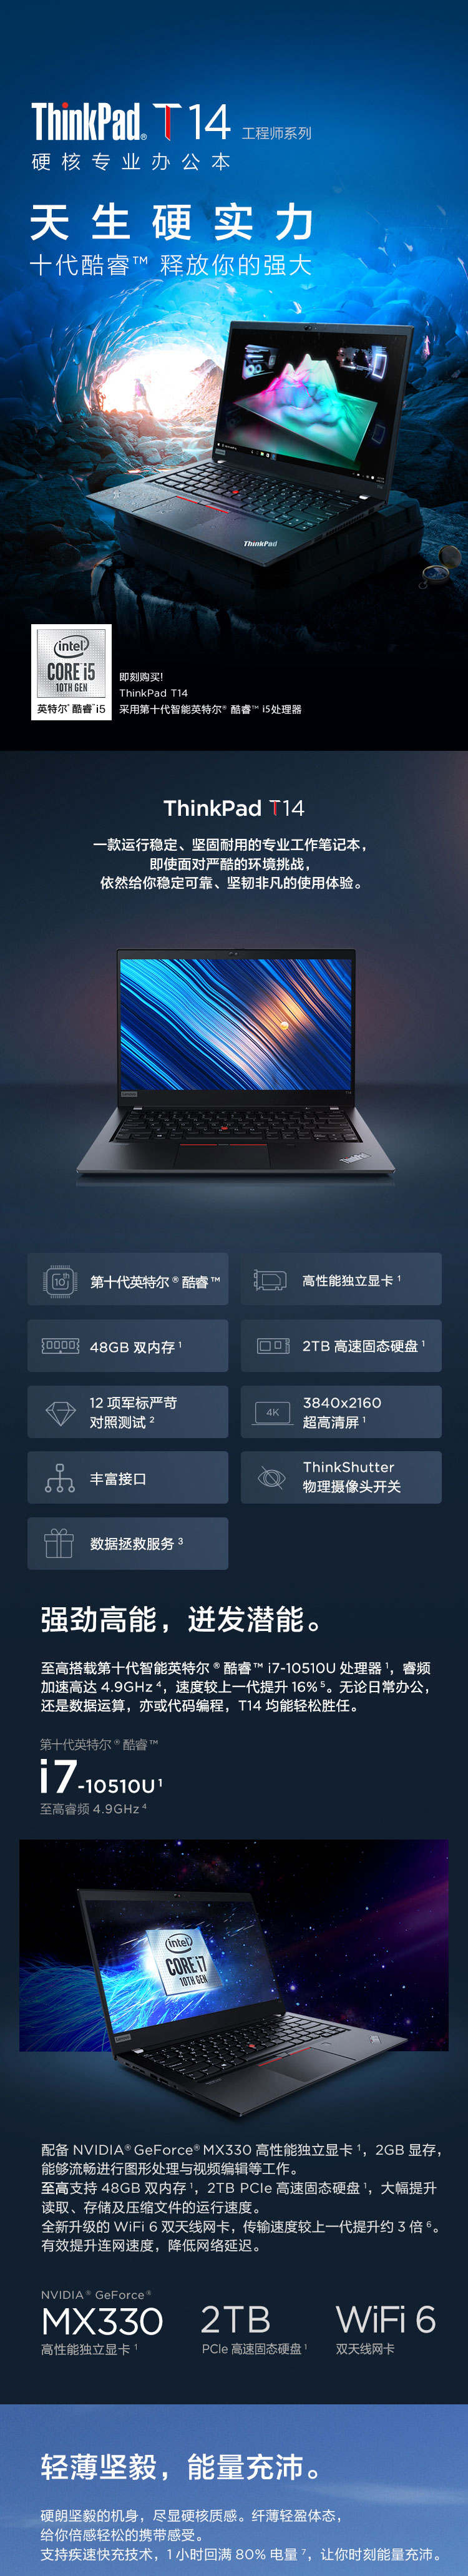 联想/lenovo ThinkPad T14 (图1)